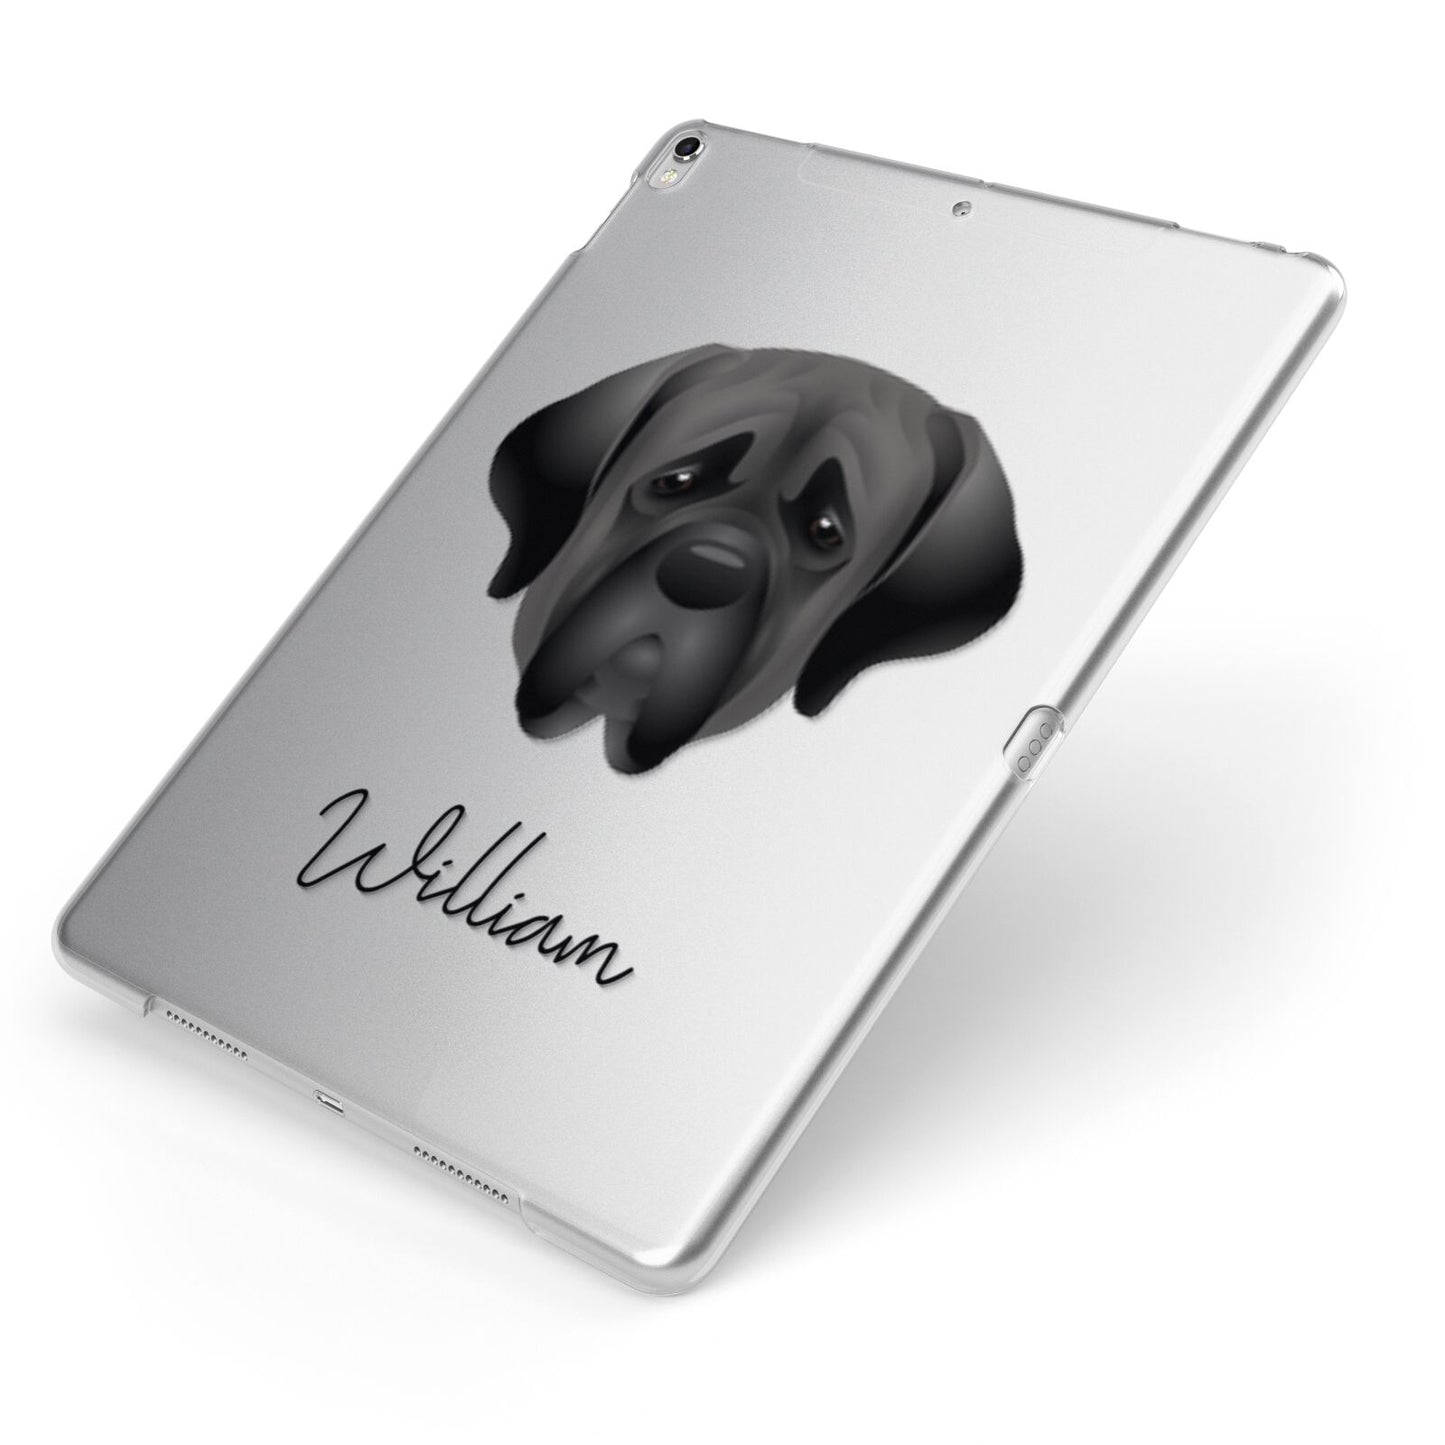 Mastiff Personalised Apple iPad Case on Silver iPad Side View